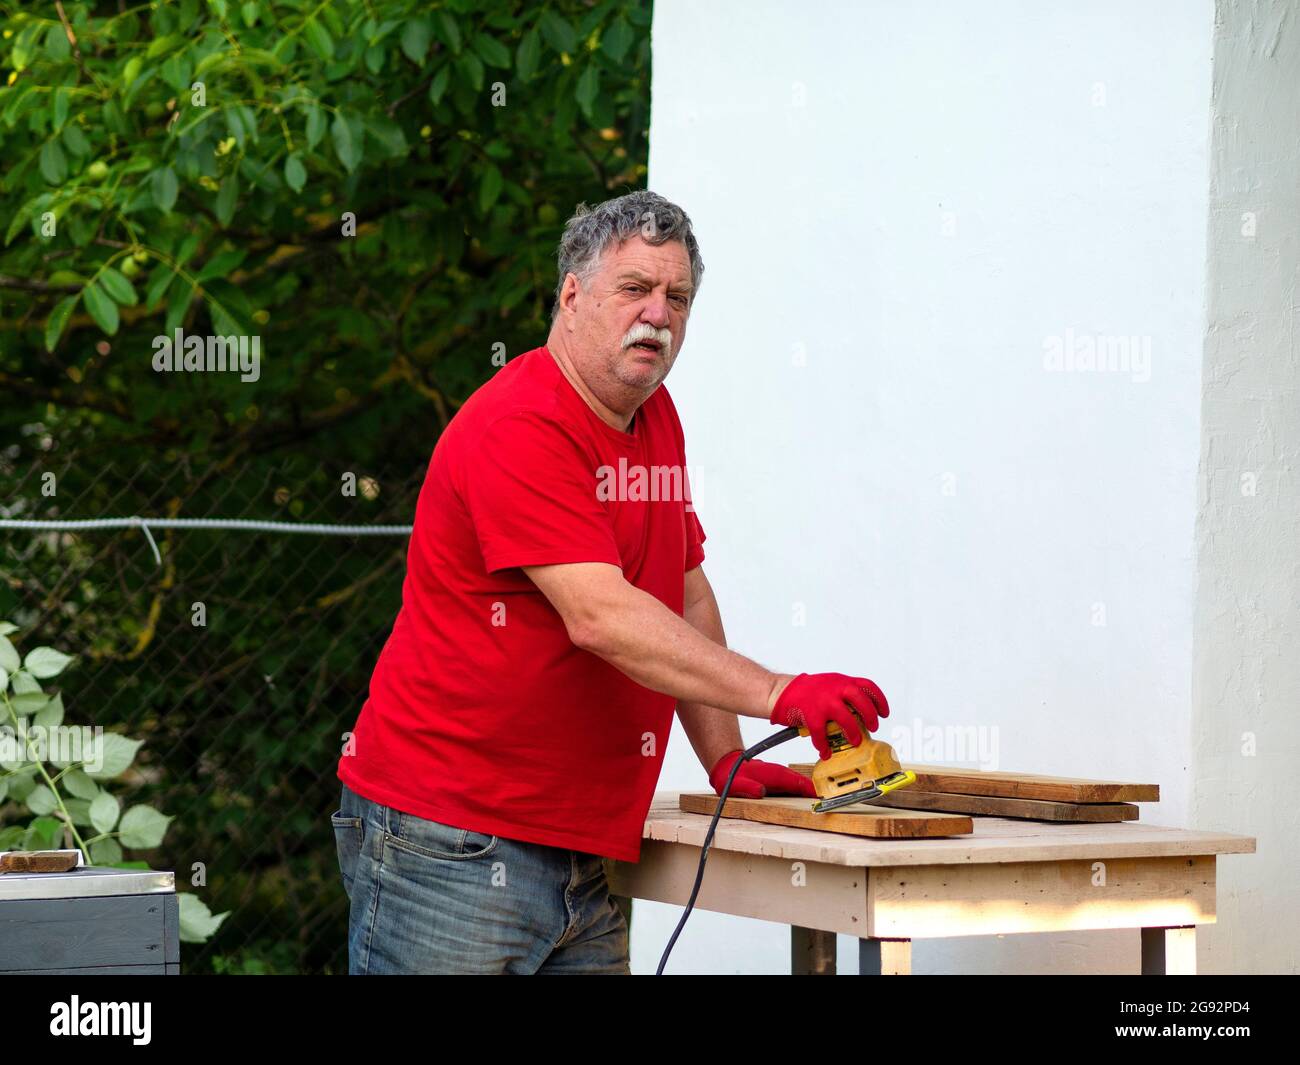 L'uomo caucasico anziano con un baffi in una t-shirt rossa sta levigando un bordo usando una levigatrice su una disposizione in un giardino vicino ad una parete bianca di una casa Foto Stock